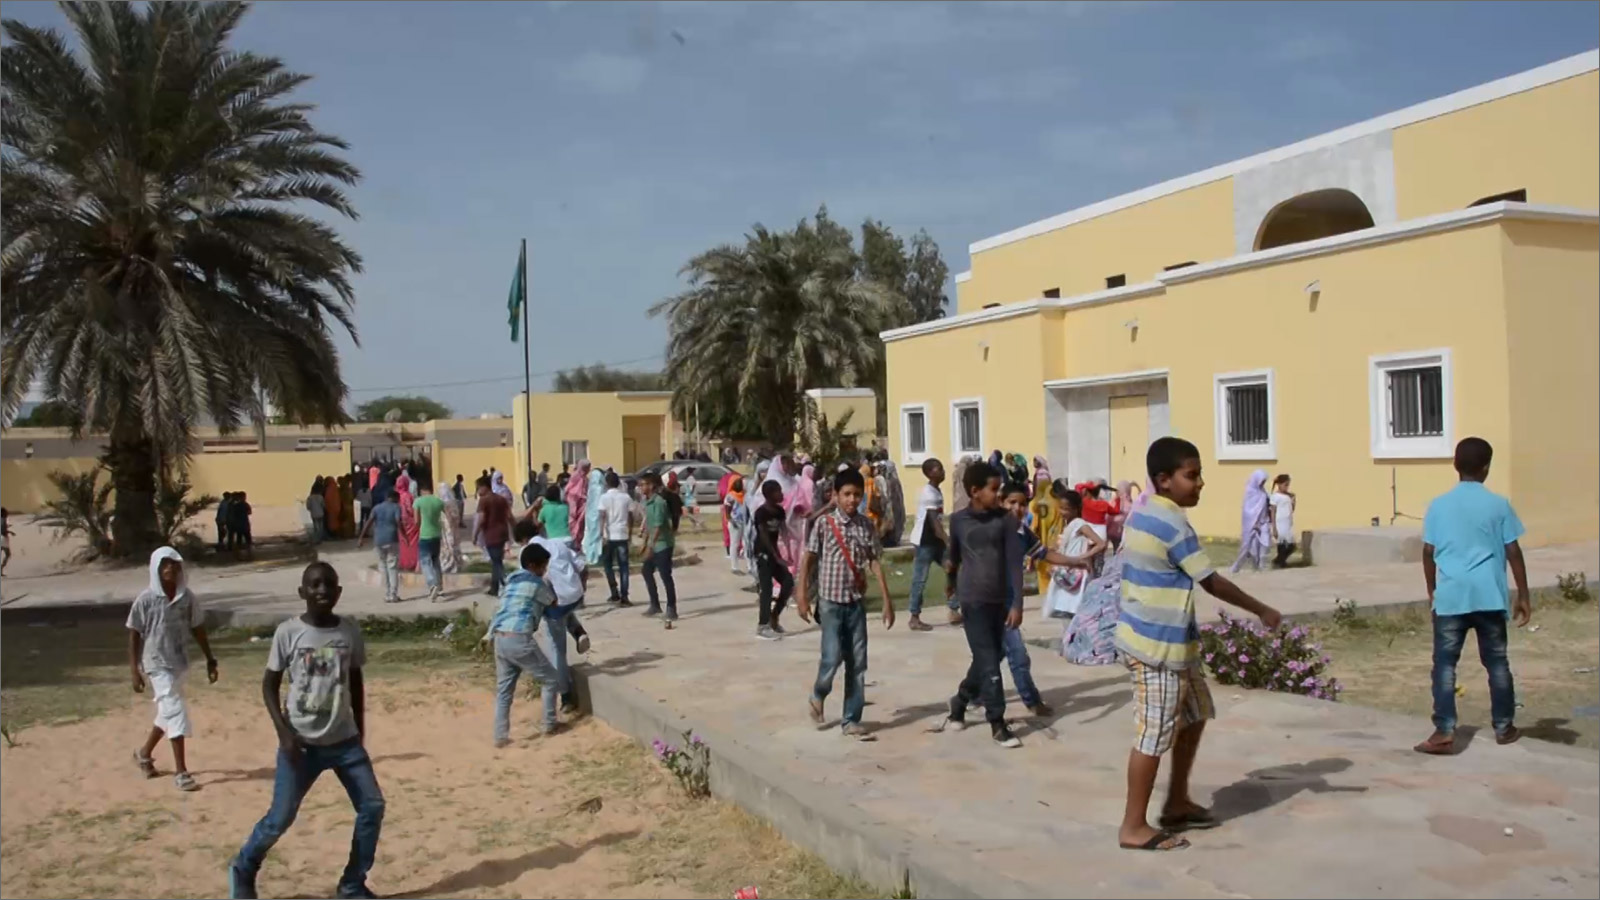 المنتدى الاقتصادي العالمي صنف موريتانيا في الرتبة الأدنى عالميا من حيث جودة التعليم العالي، كما جاءت أسفل دول تعاني من حروب أهلية